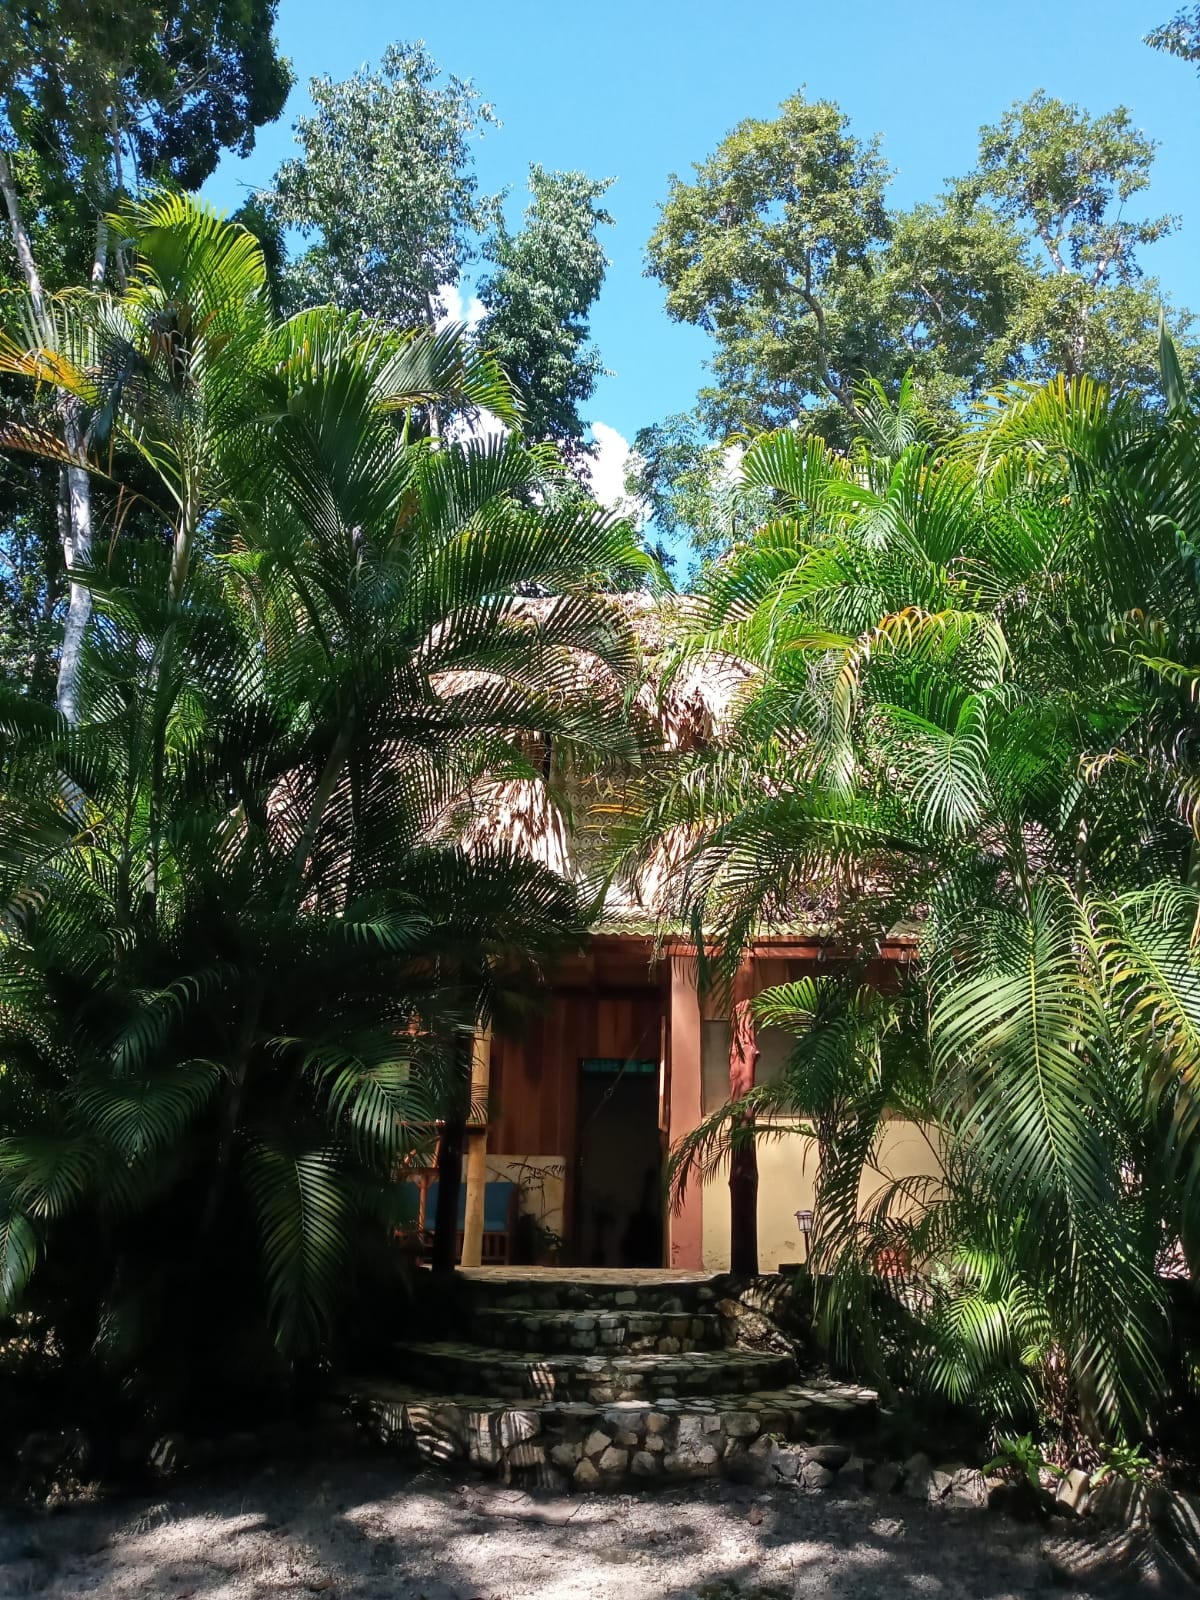 Casa local maya